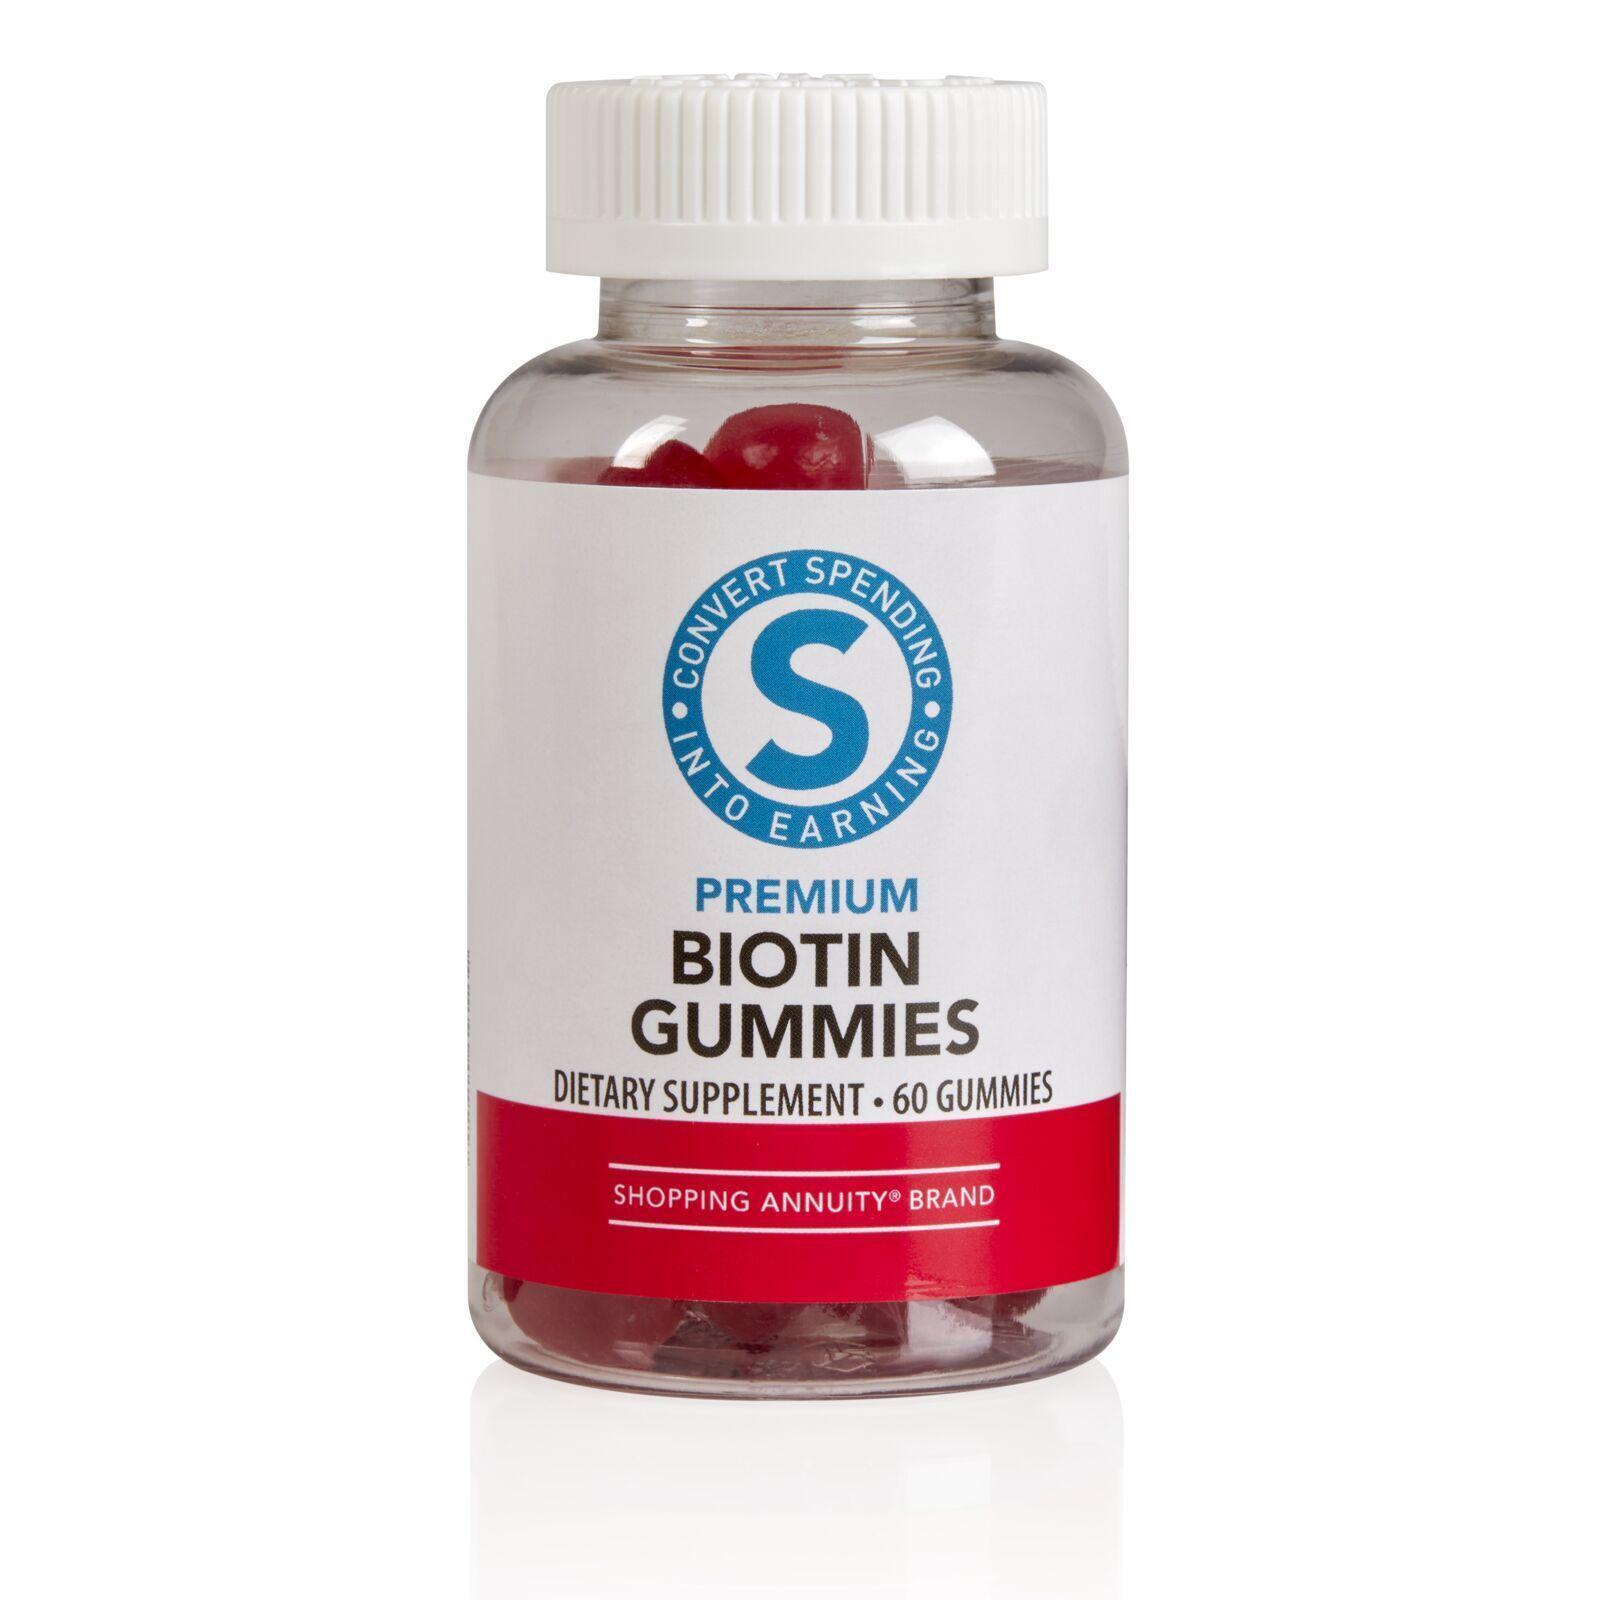 Shopping Annuity Premium Biotin Gummies